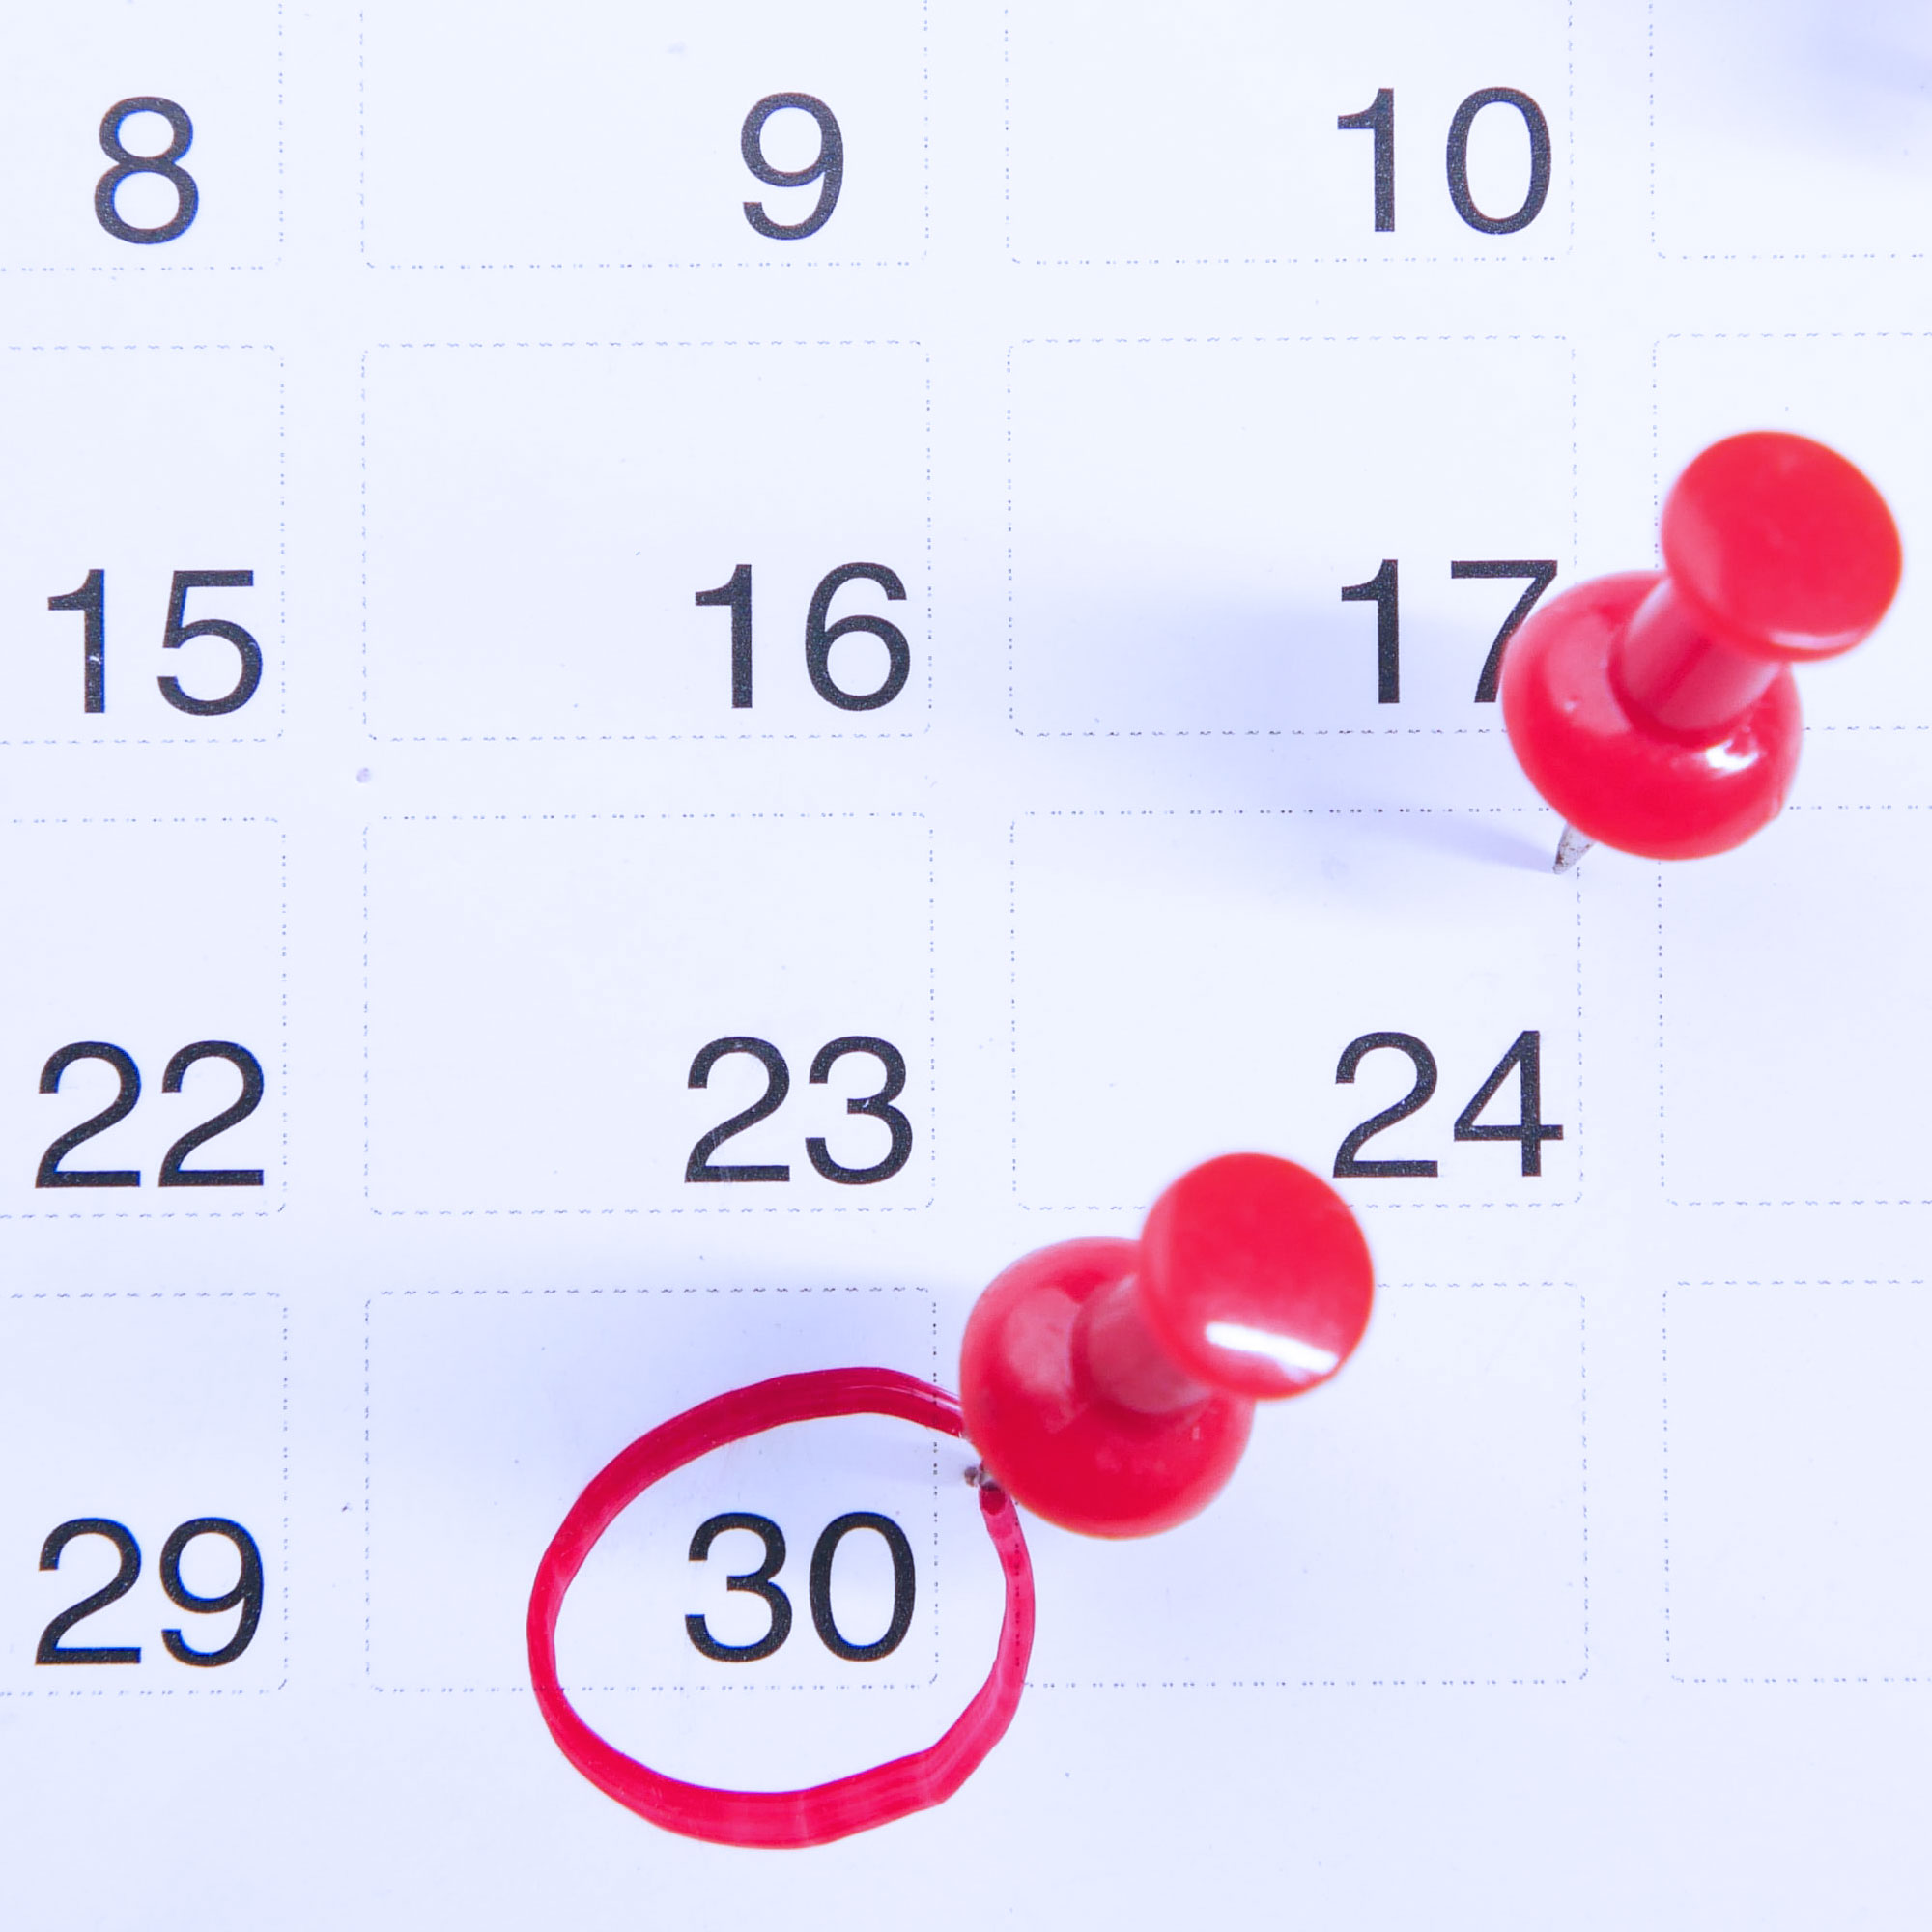 Kalenderblatt mit roten Pin-Nadeln und rot umkreisten Zahlen